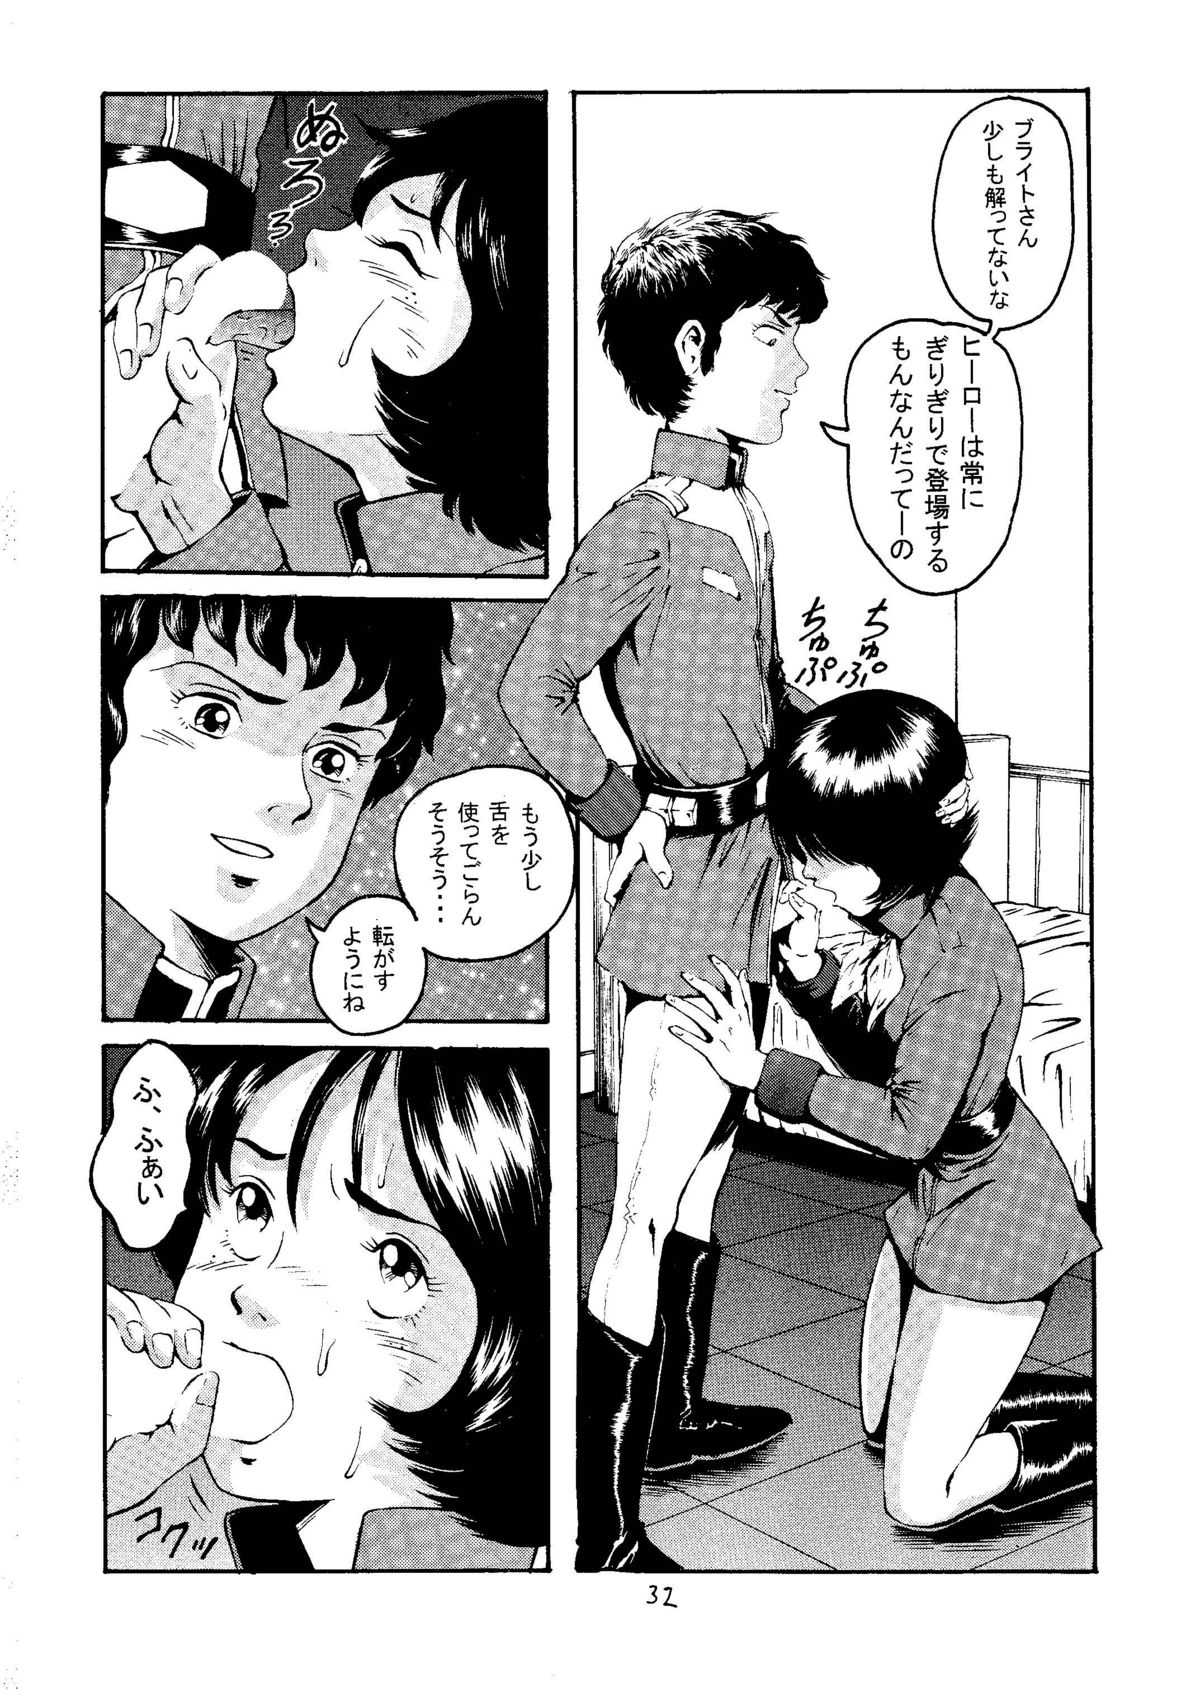 [Skirt Tsuki] 20 Seiki Saigo no Kinpatsu-san (Kidou Senshi Gundam / Mobile Suit Gundam) [スカートつき] 20世紀最後の金髪さん (起動戦士ガンダム)